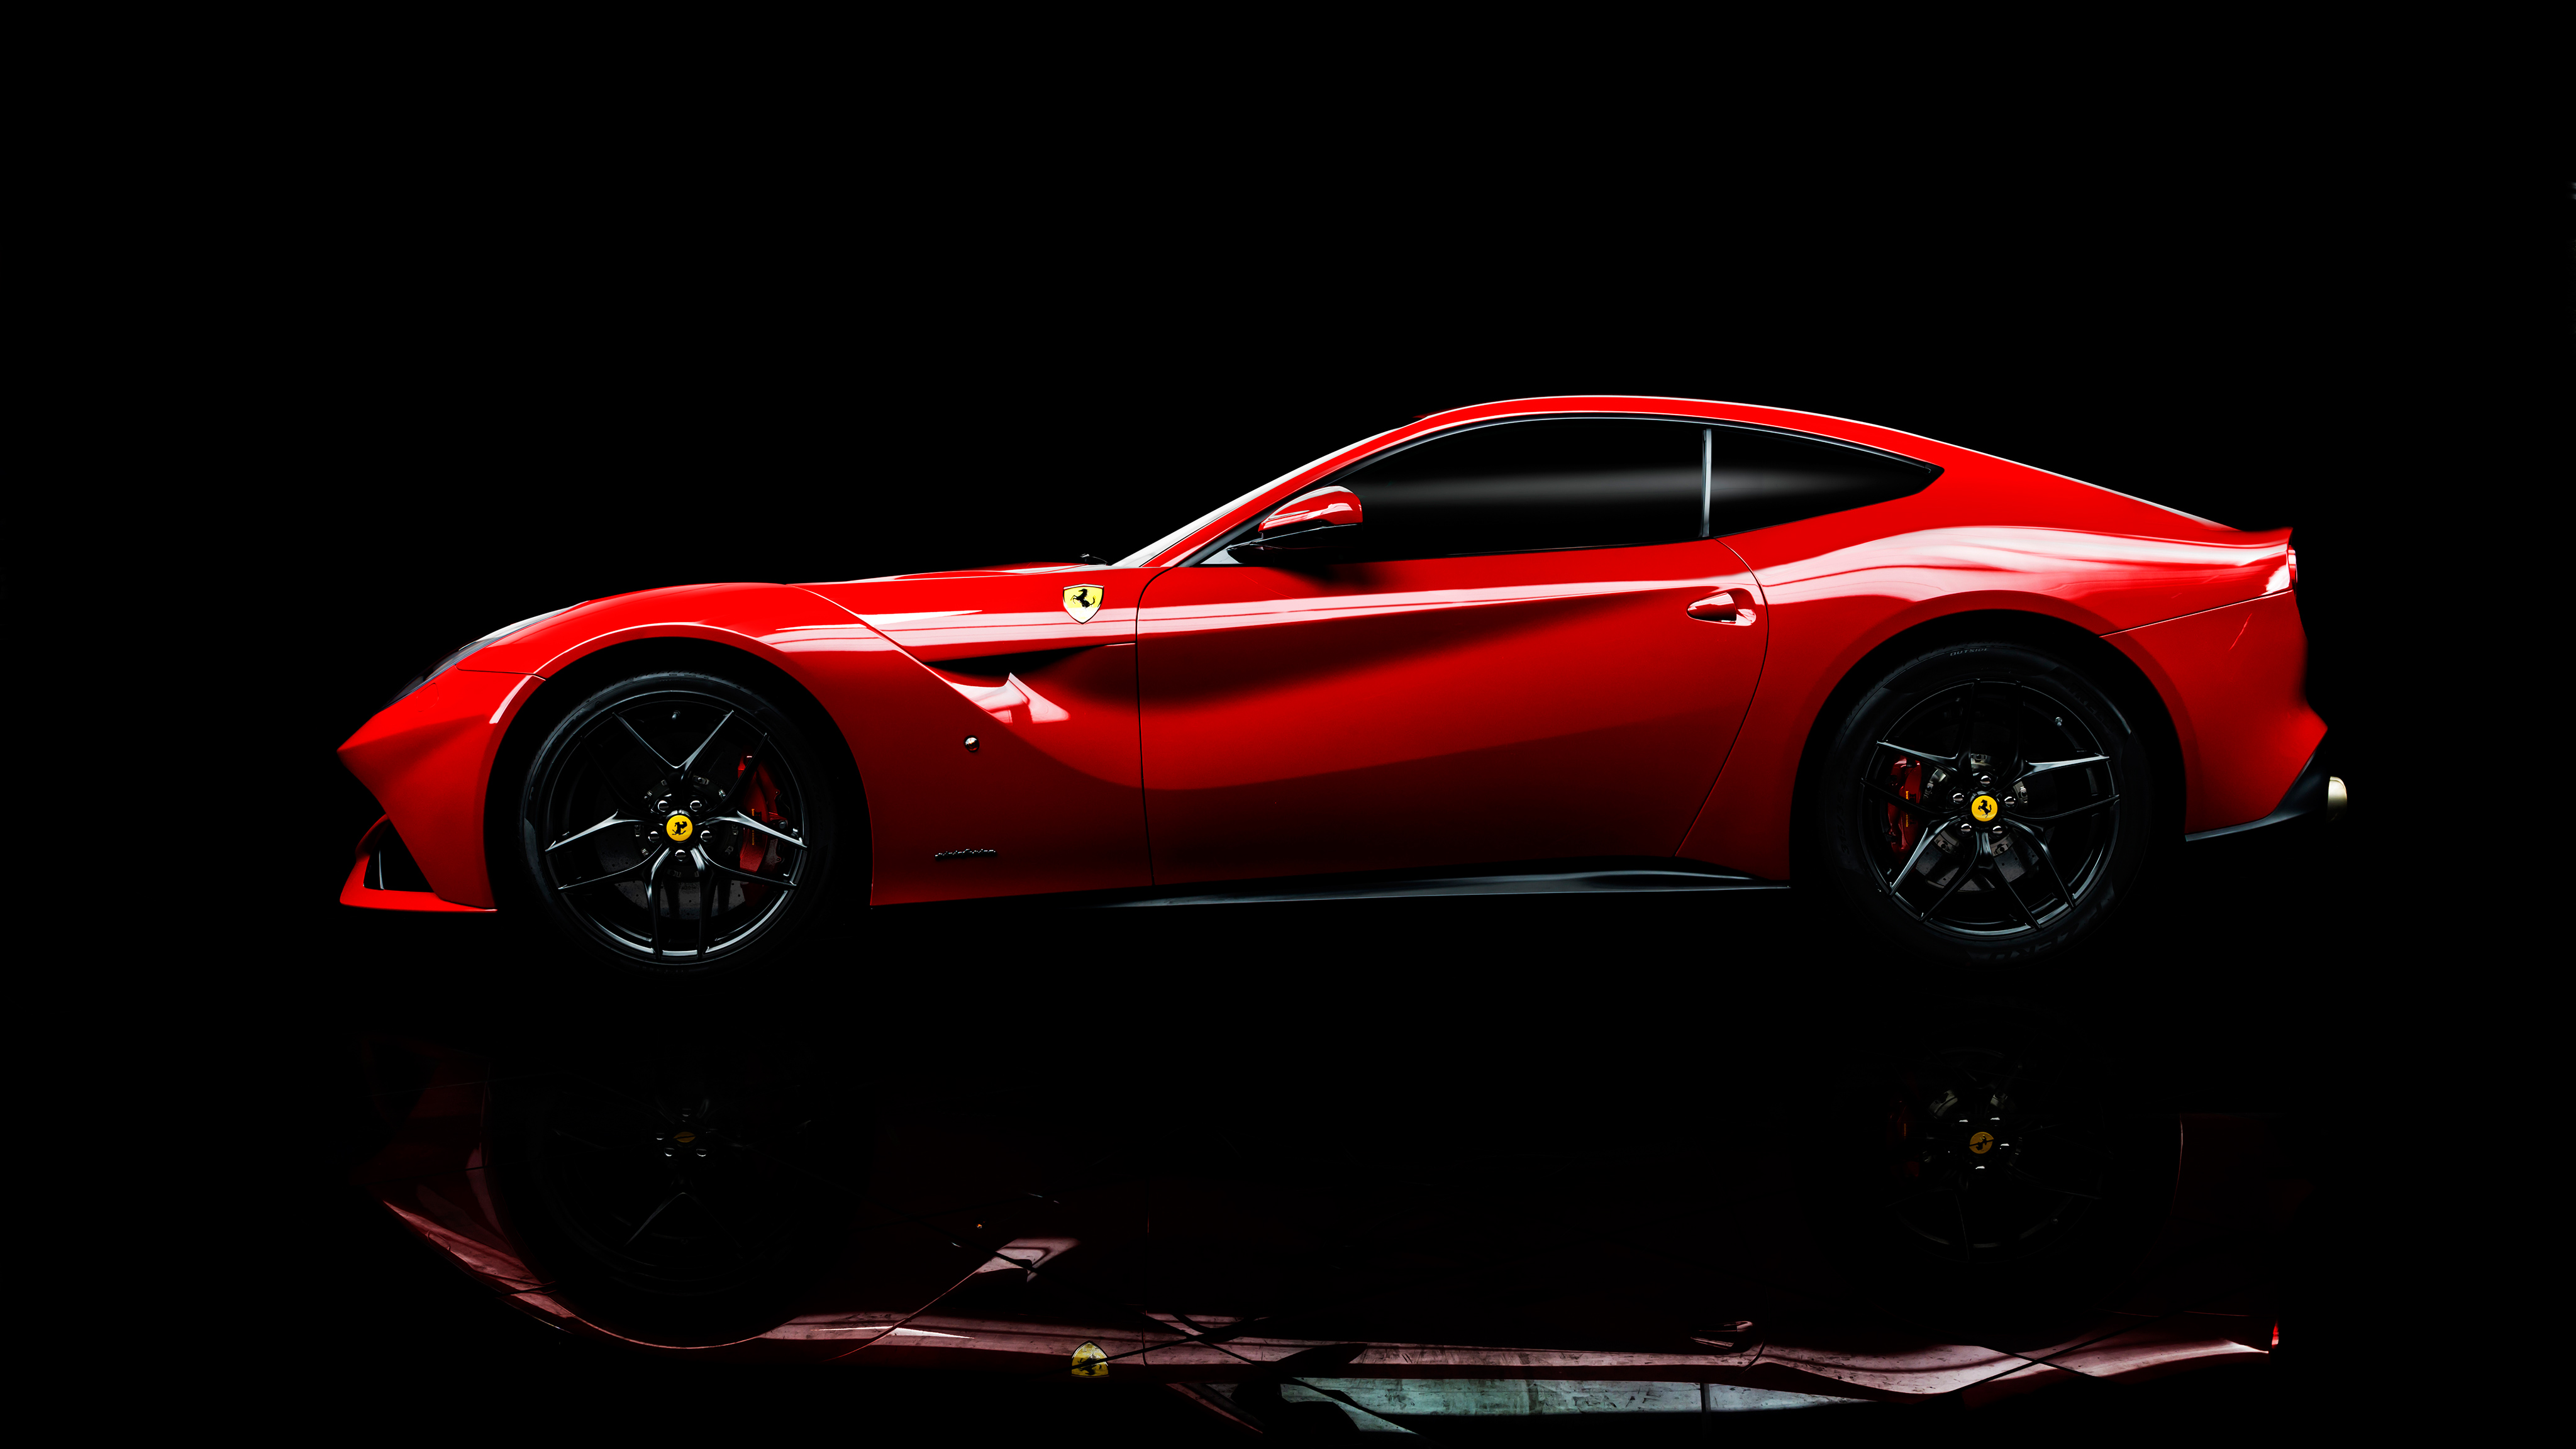 Ferrari F12berlinetta 4K Wallpaper | HD Car Wallpapers | ID #8803